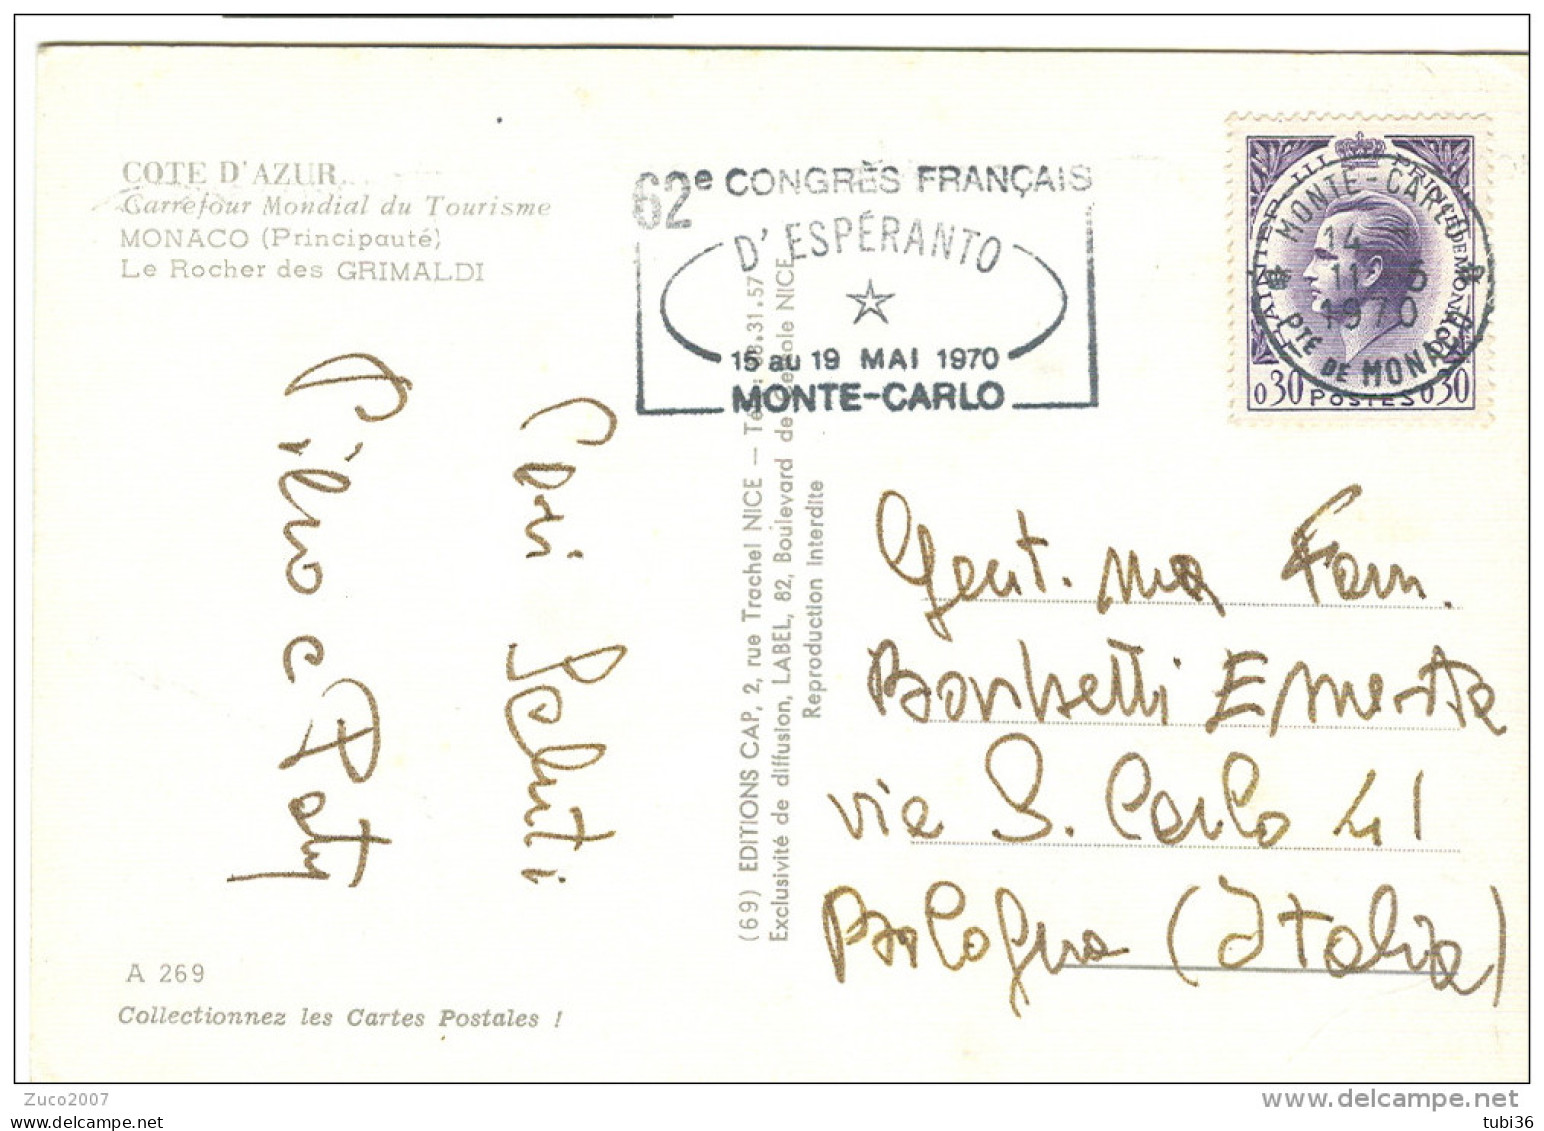 MONTE CARLO, 62 CONGRES FRANCAIS D'ESPERANTO,POSTE MONTECARLO TARGHETTA, ,1970, LE ROCHER DES GRIMALDI - Postmarks